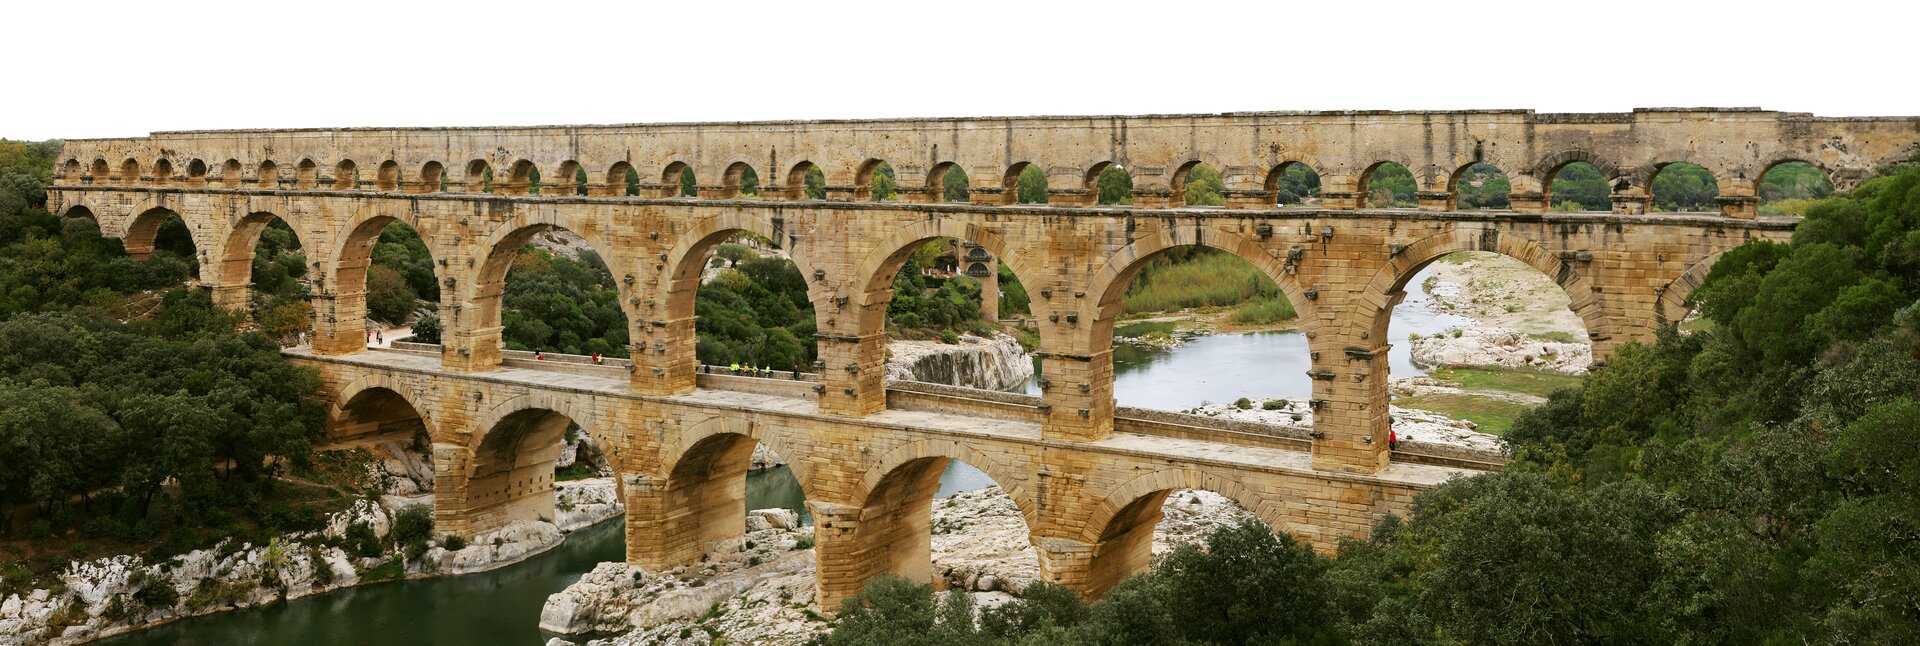 Rzymski akwedukt Pont du Gard we Francji Rzymski akwedukt Pont du Gard we Francji Źródło: Benh LIEU SONG, Wikimedia Commons, licencja: CC BY-SA 3.0.